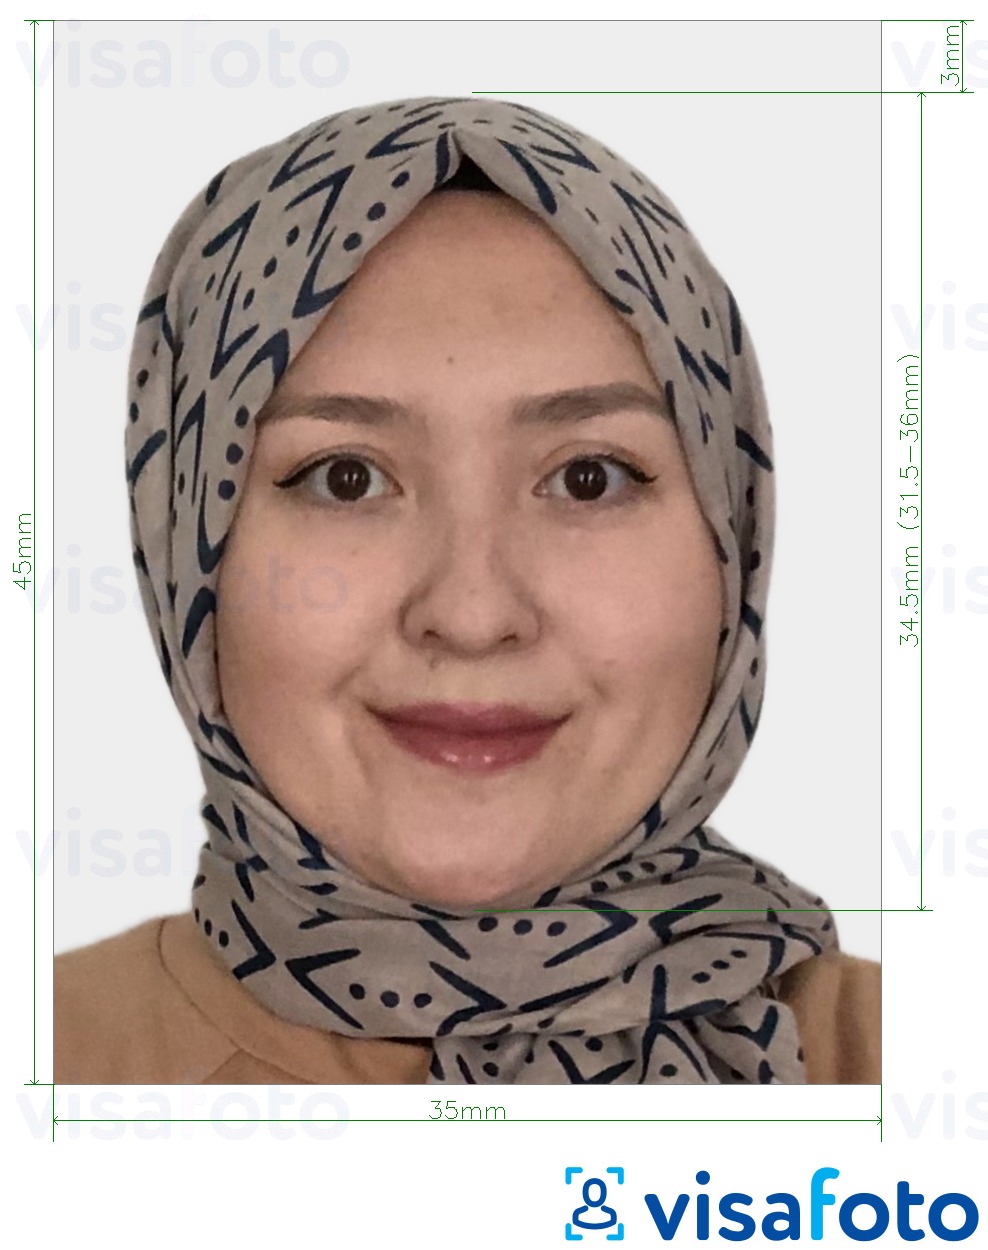 Voorbeeld van foto voor Kazachstan Visa 35x45 mm (3,5x4,5 cm) met exacte maatspecificatie